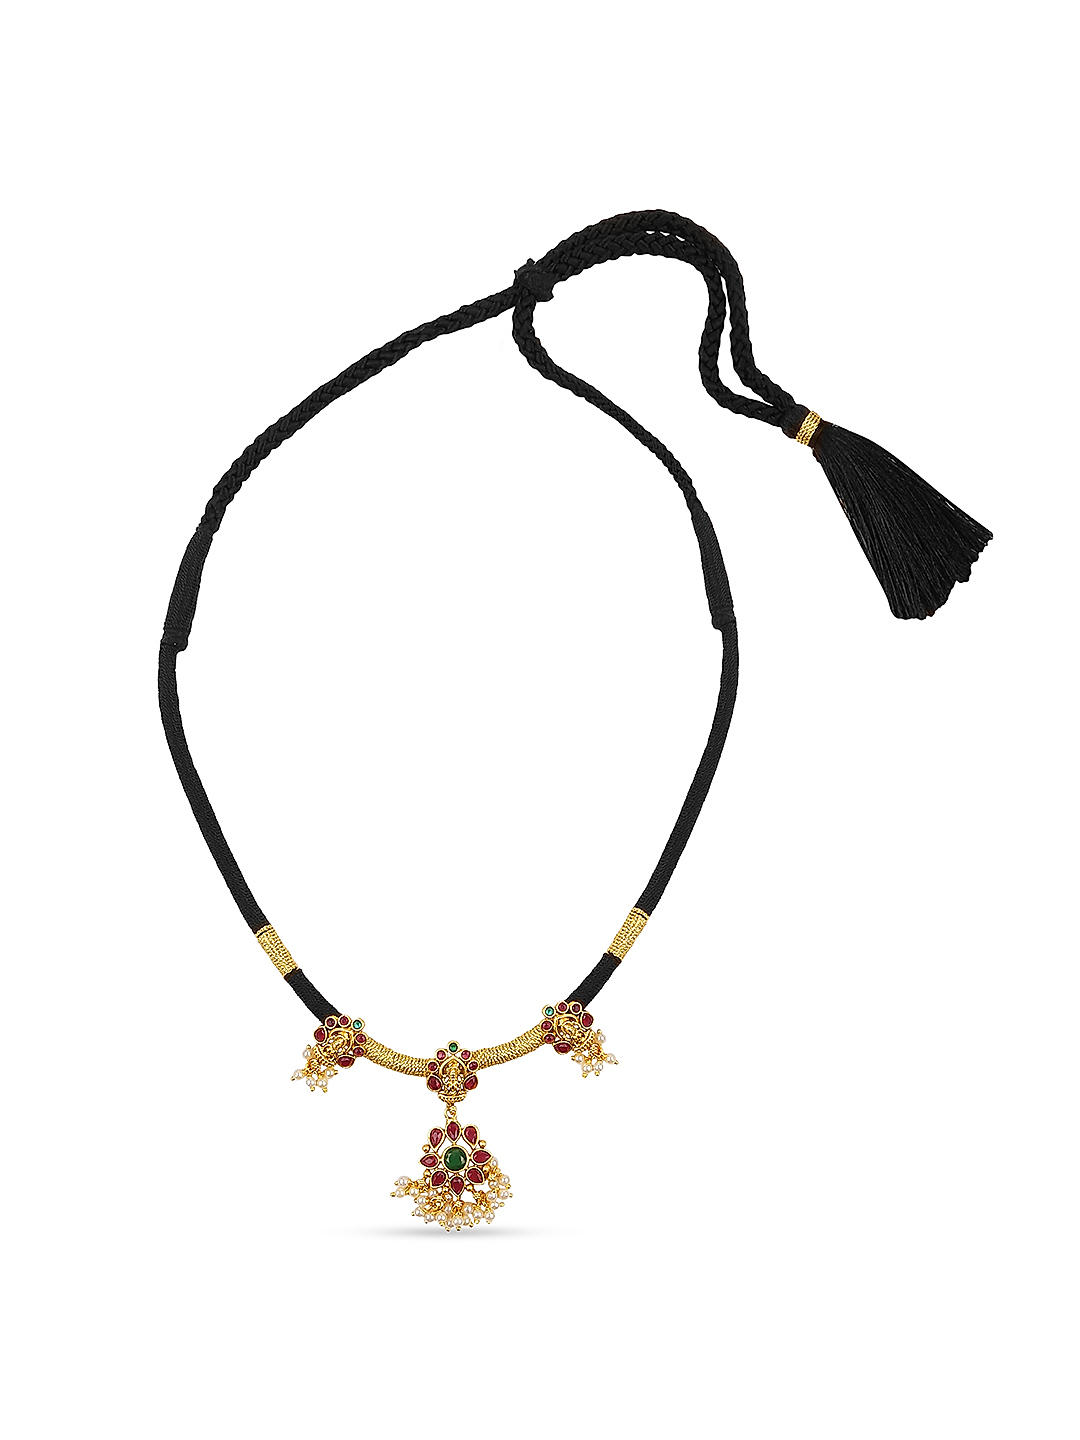 Eternity Black Cord Necklace - Vee's Gothic & Mystic Jewelry